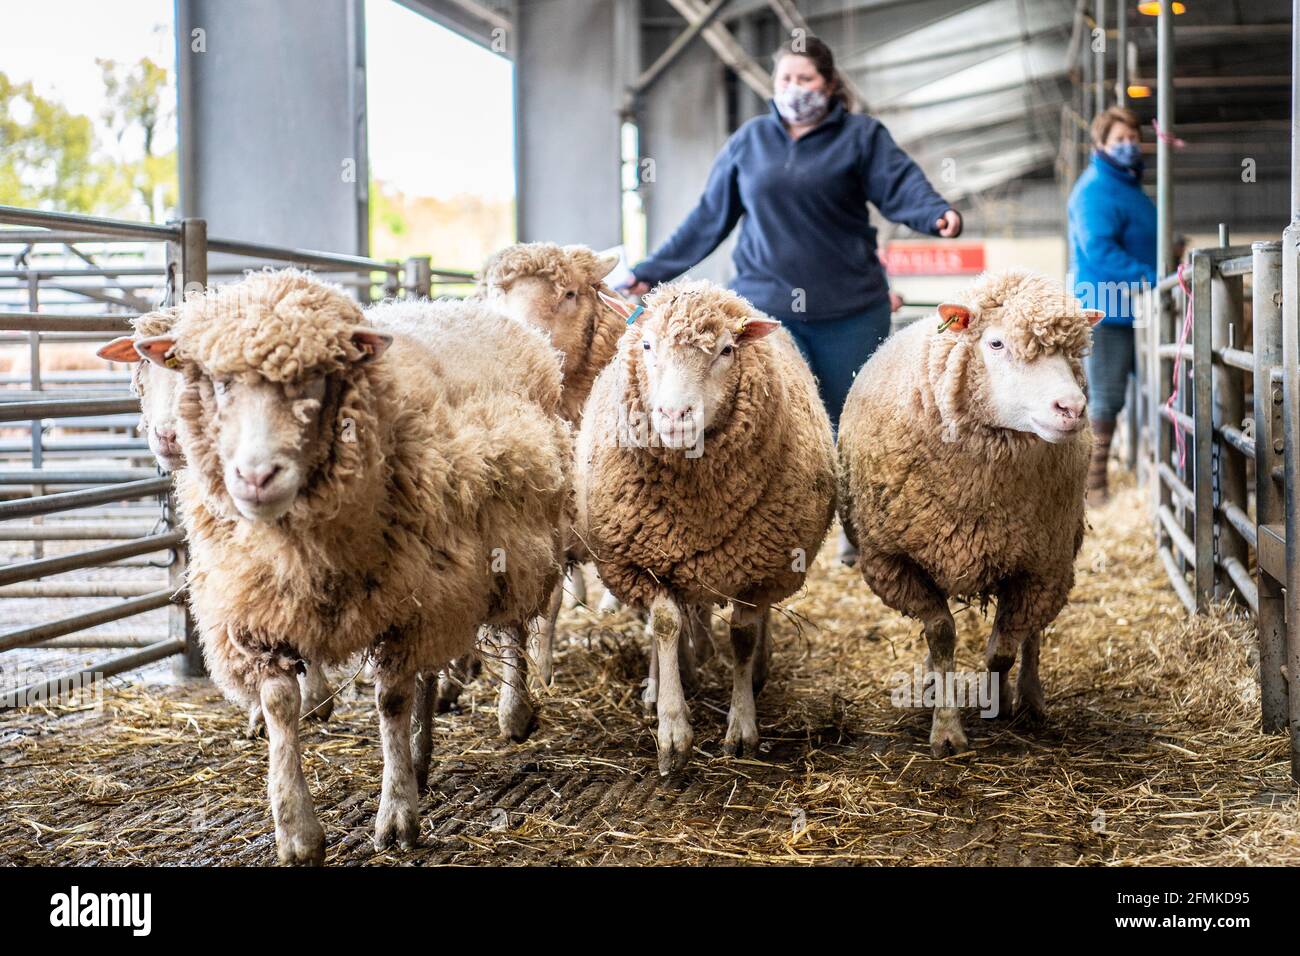 moutons au marché des moutons Banque D'Images